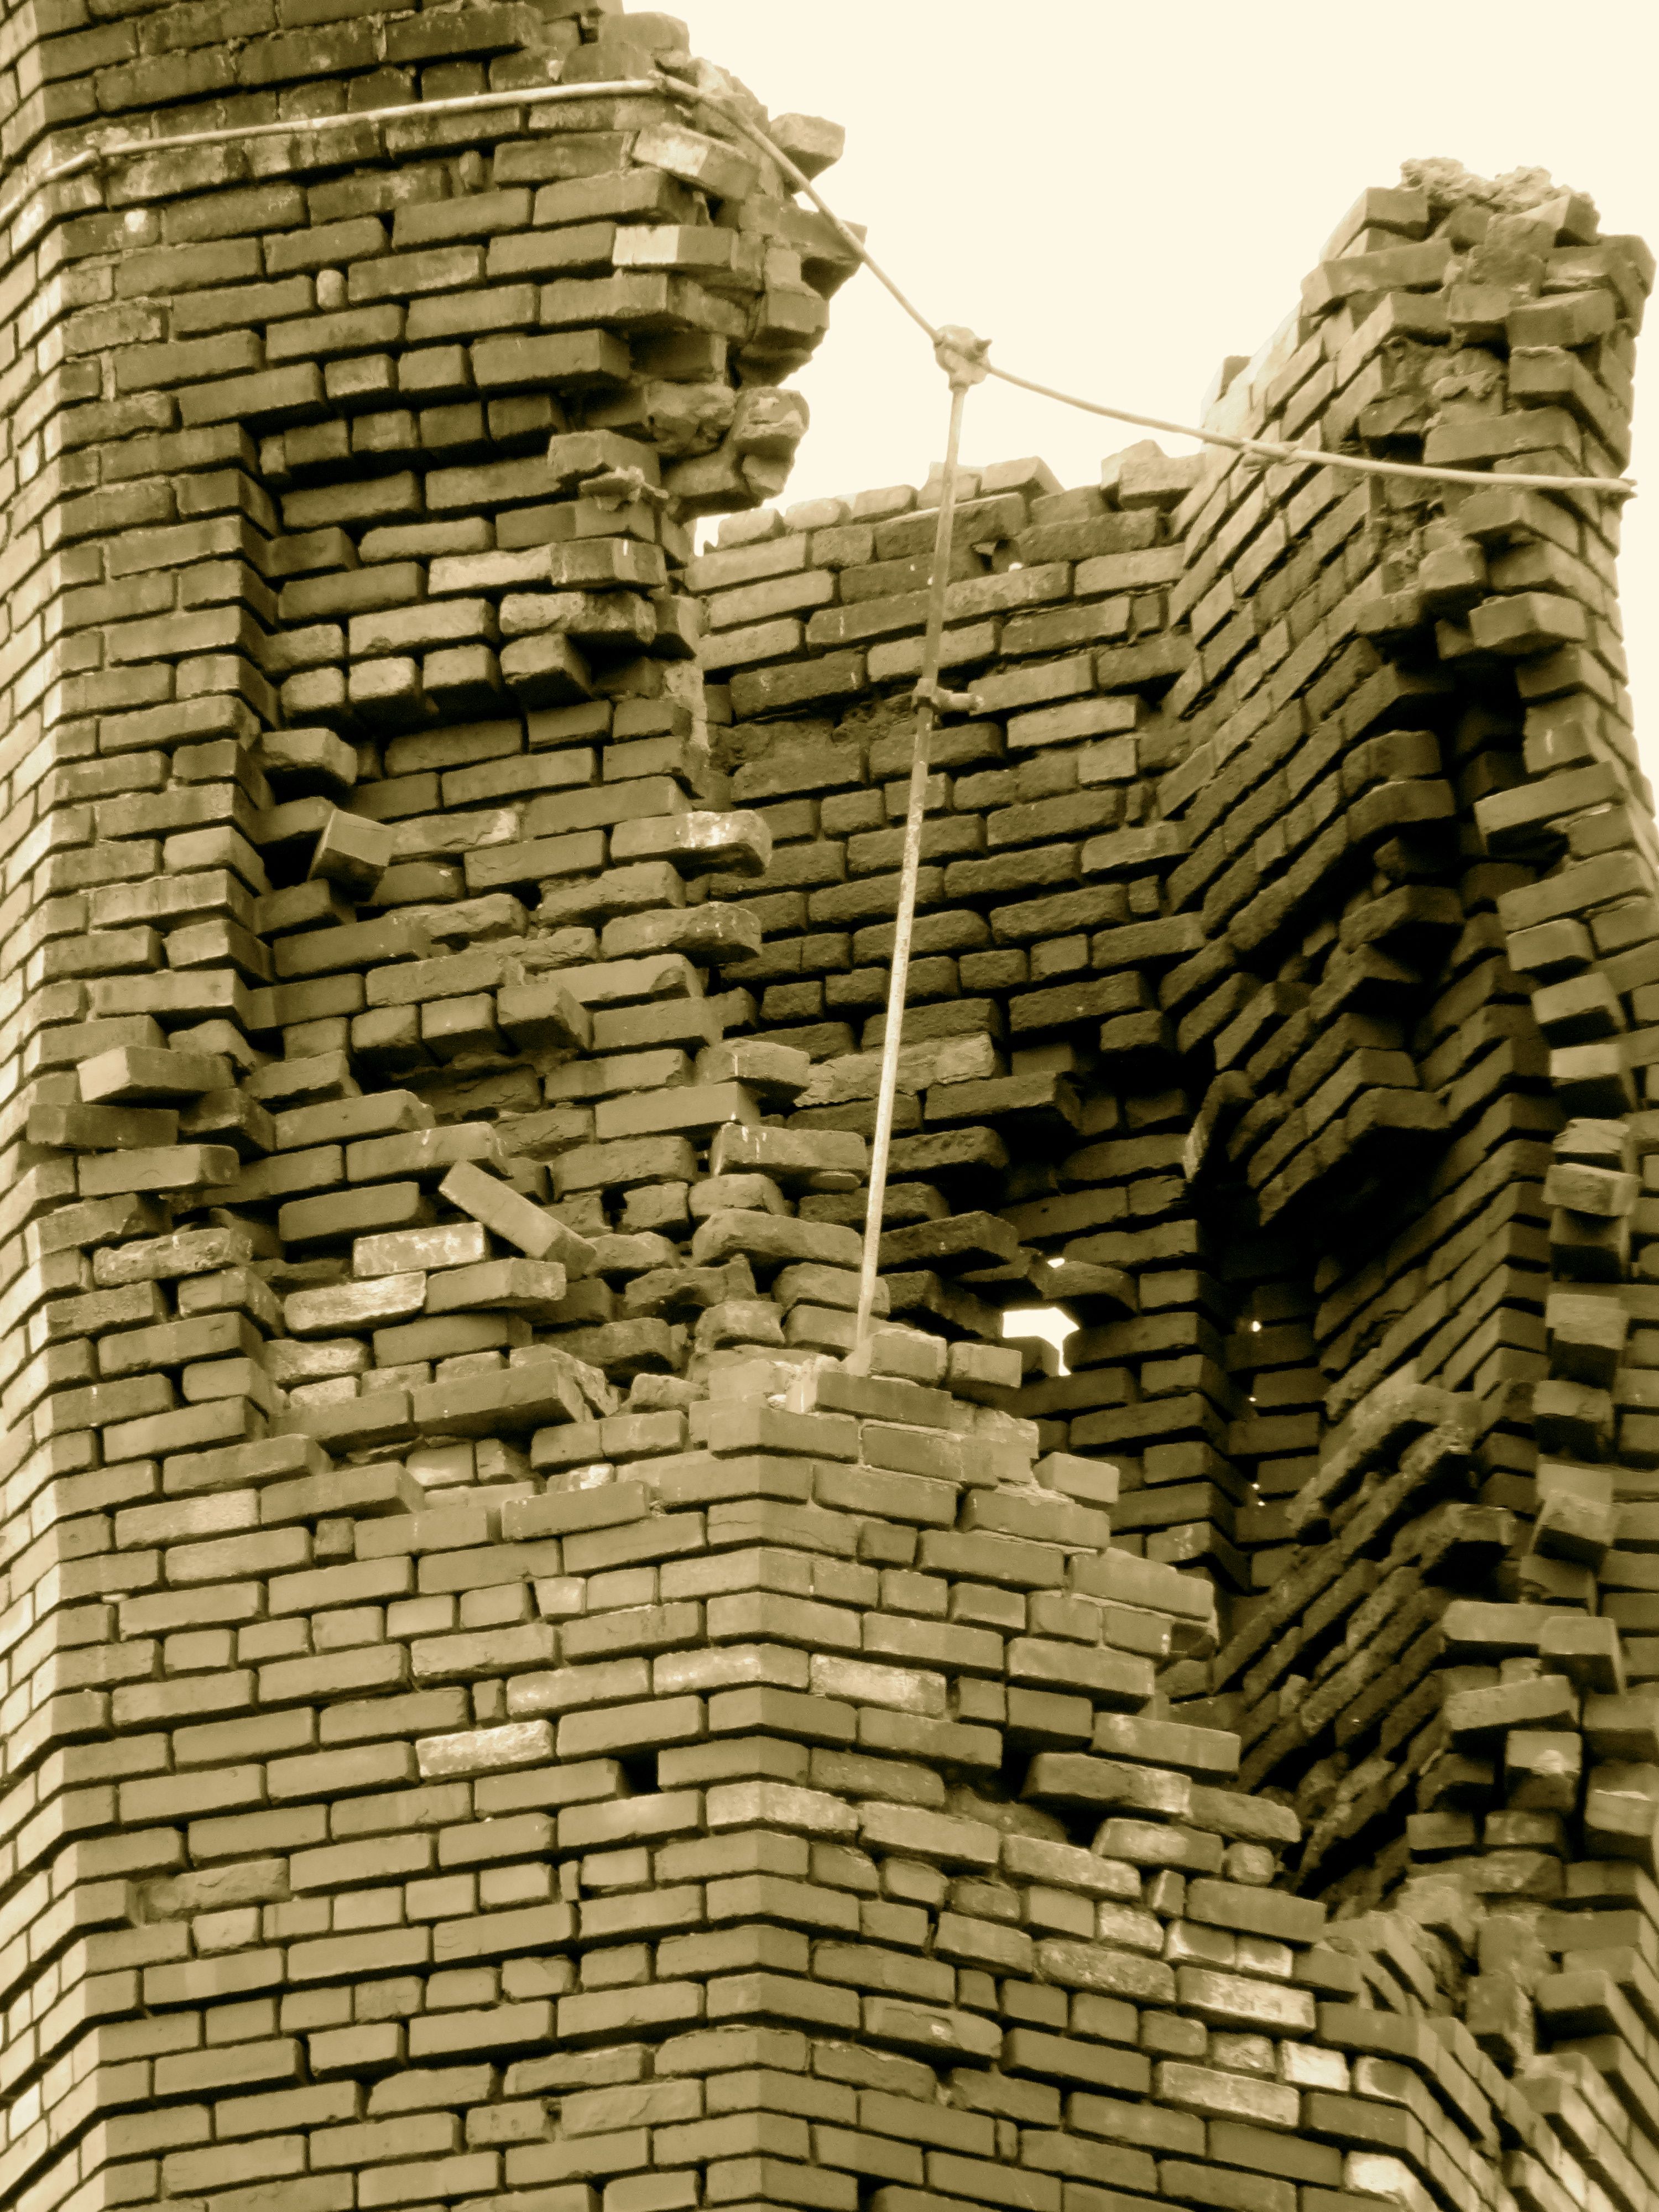 Chimney Bricks